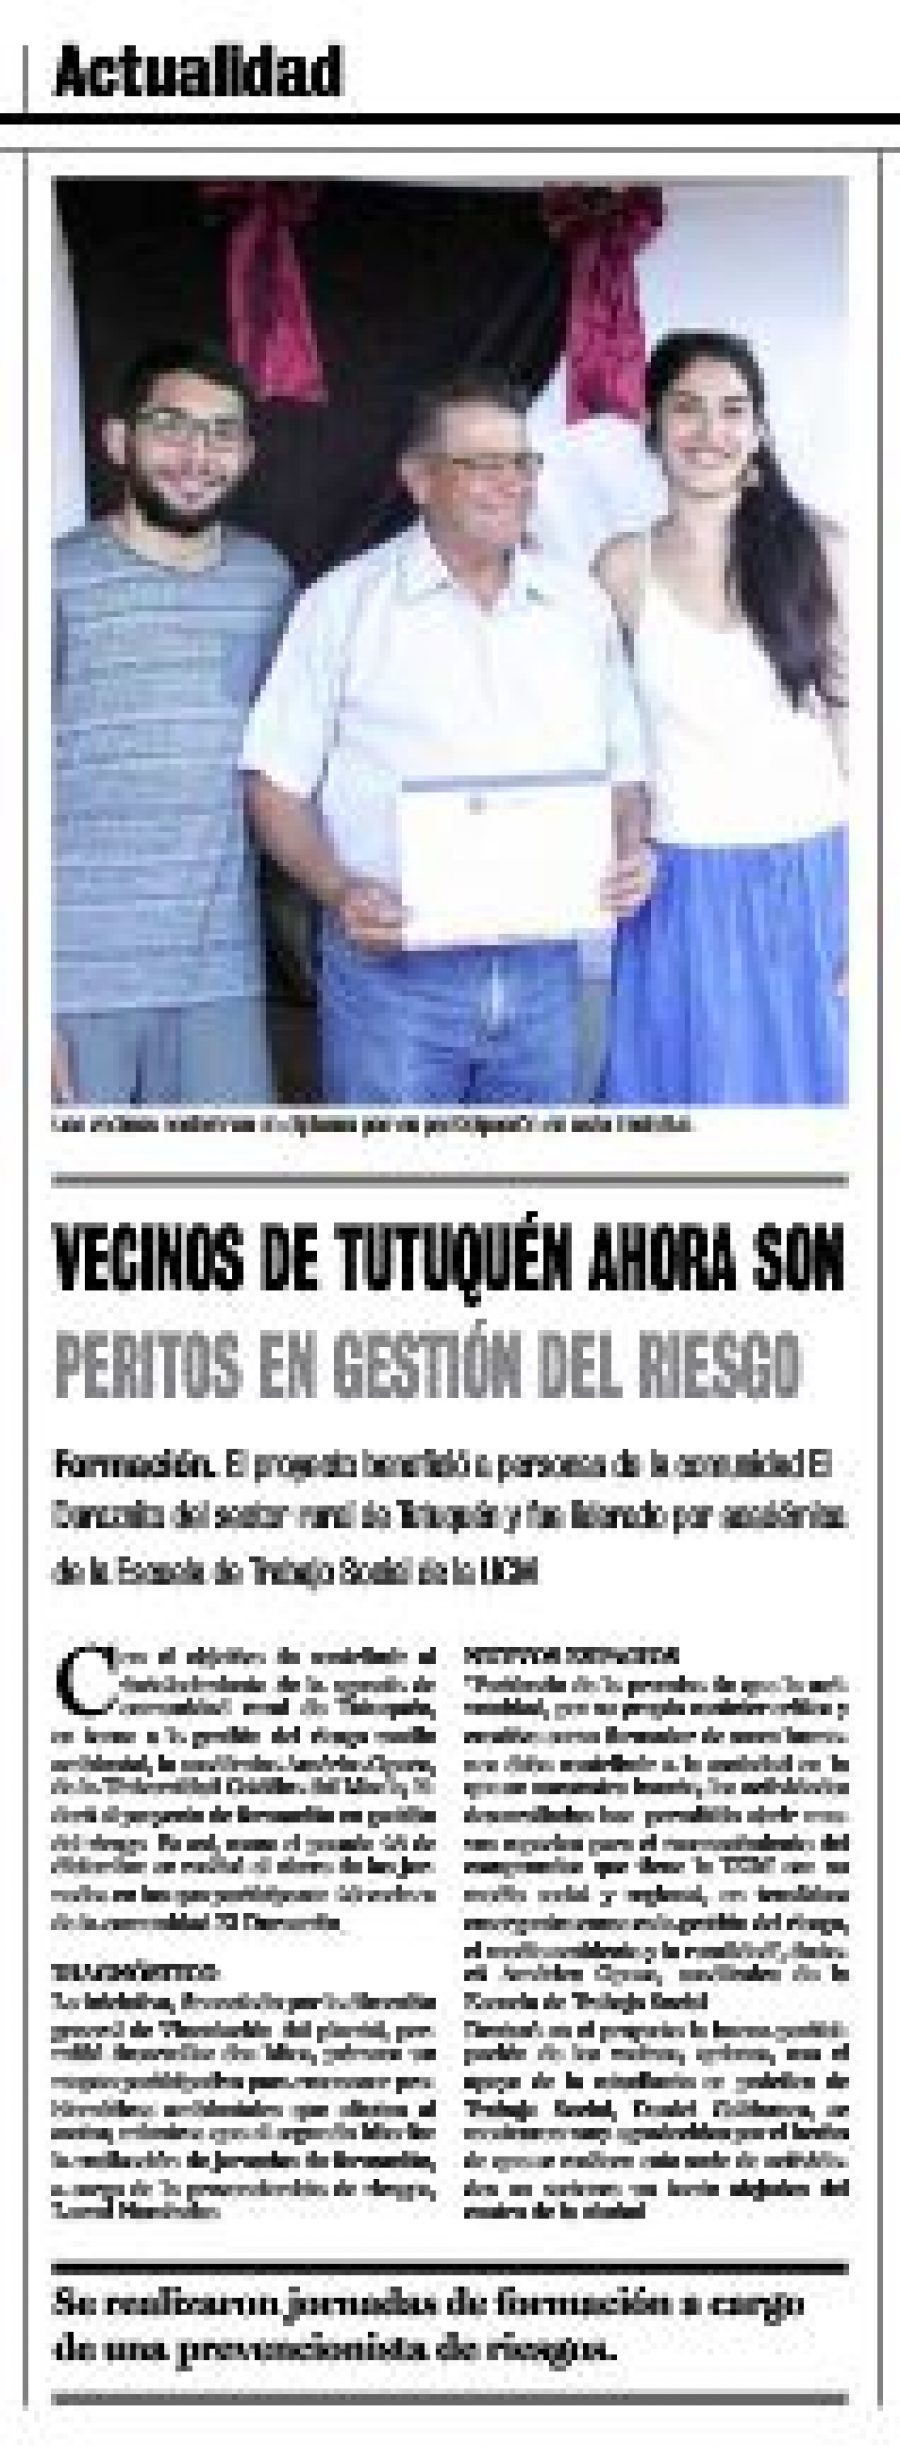 06 de enero en Diario La Prensa: “Vecinos de Tutuquén ahora son peritos en Gestión del Riesgo”